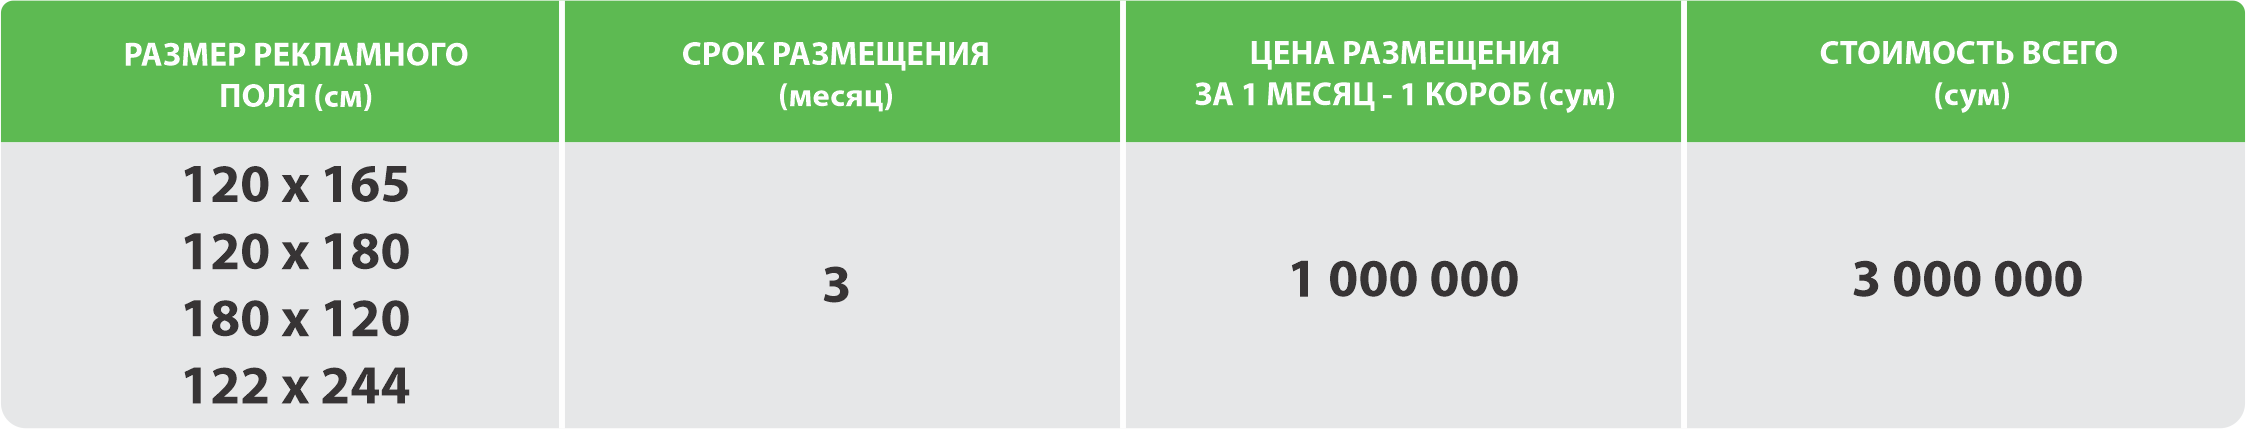 Стоимость размещения рекламы на LightBox (лайтбоксах) в холлах метро Ташкента